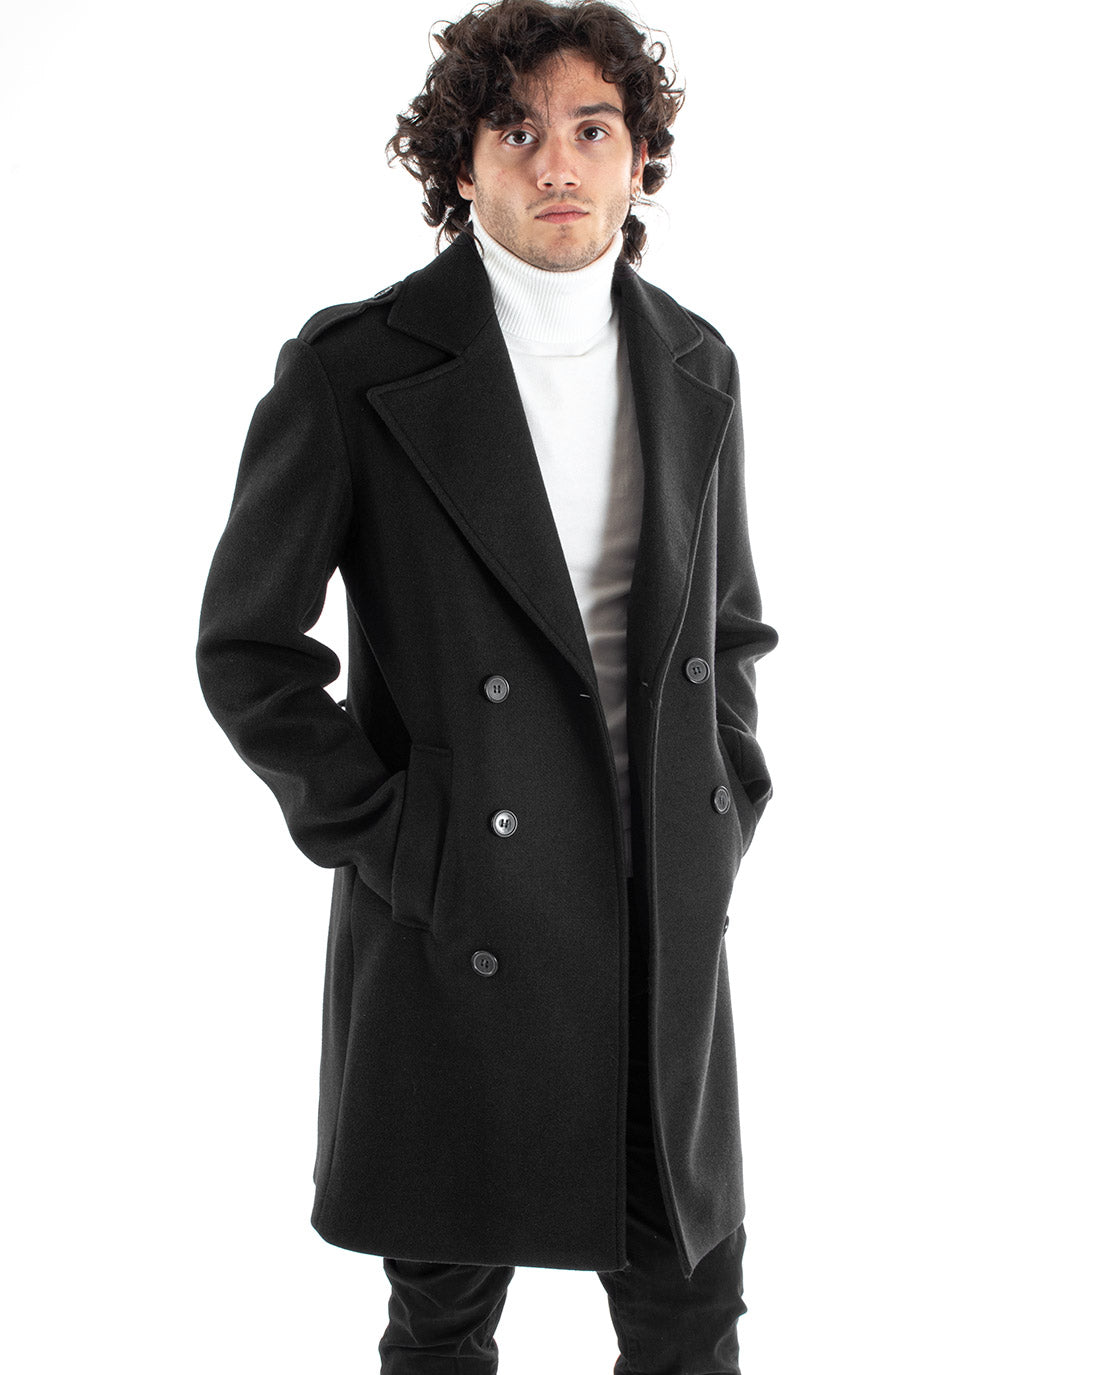 Double-breasted Coat Men Jacket With Belt Long Black Jacket Elegant Jacket GIOSAL-G2982A